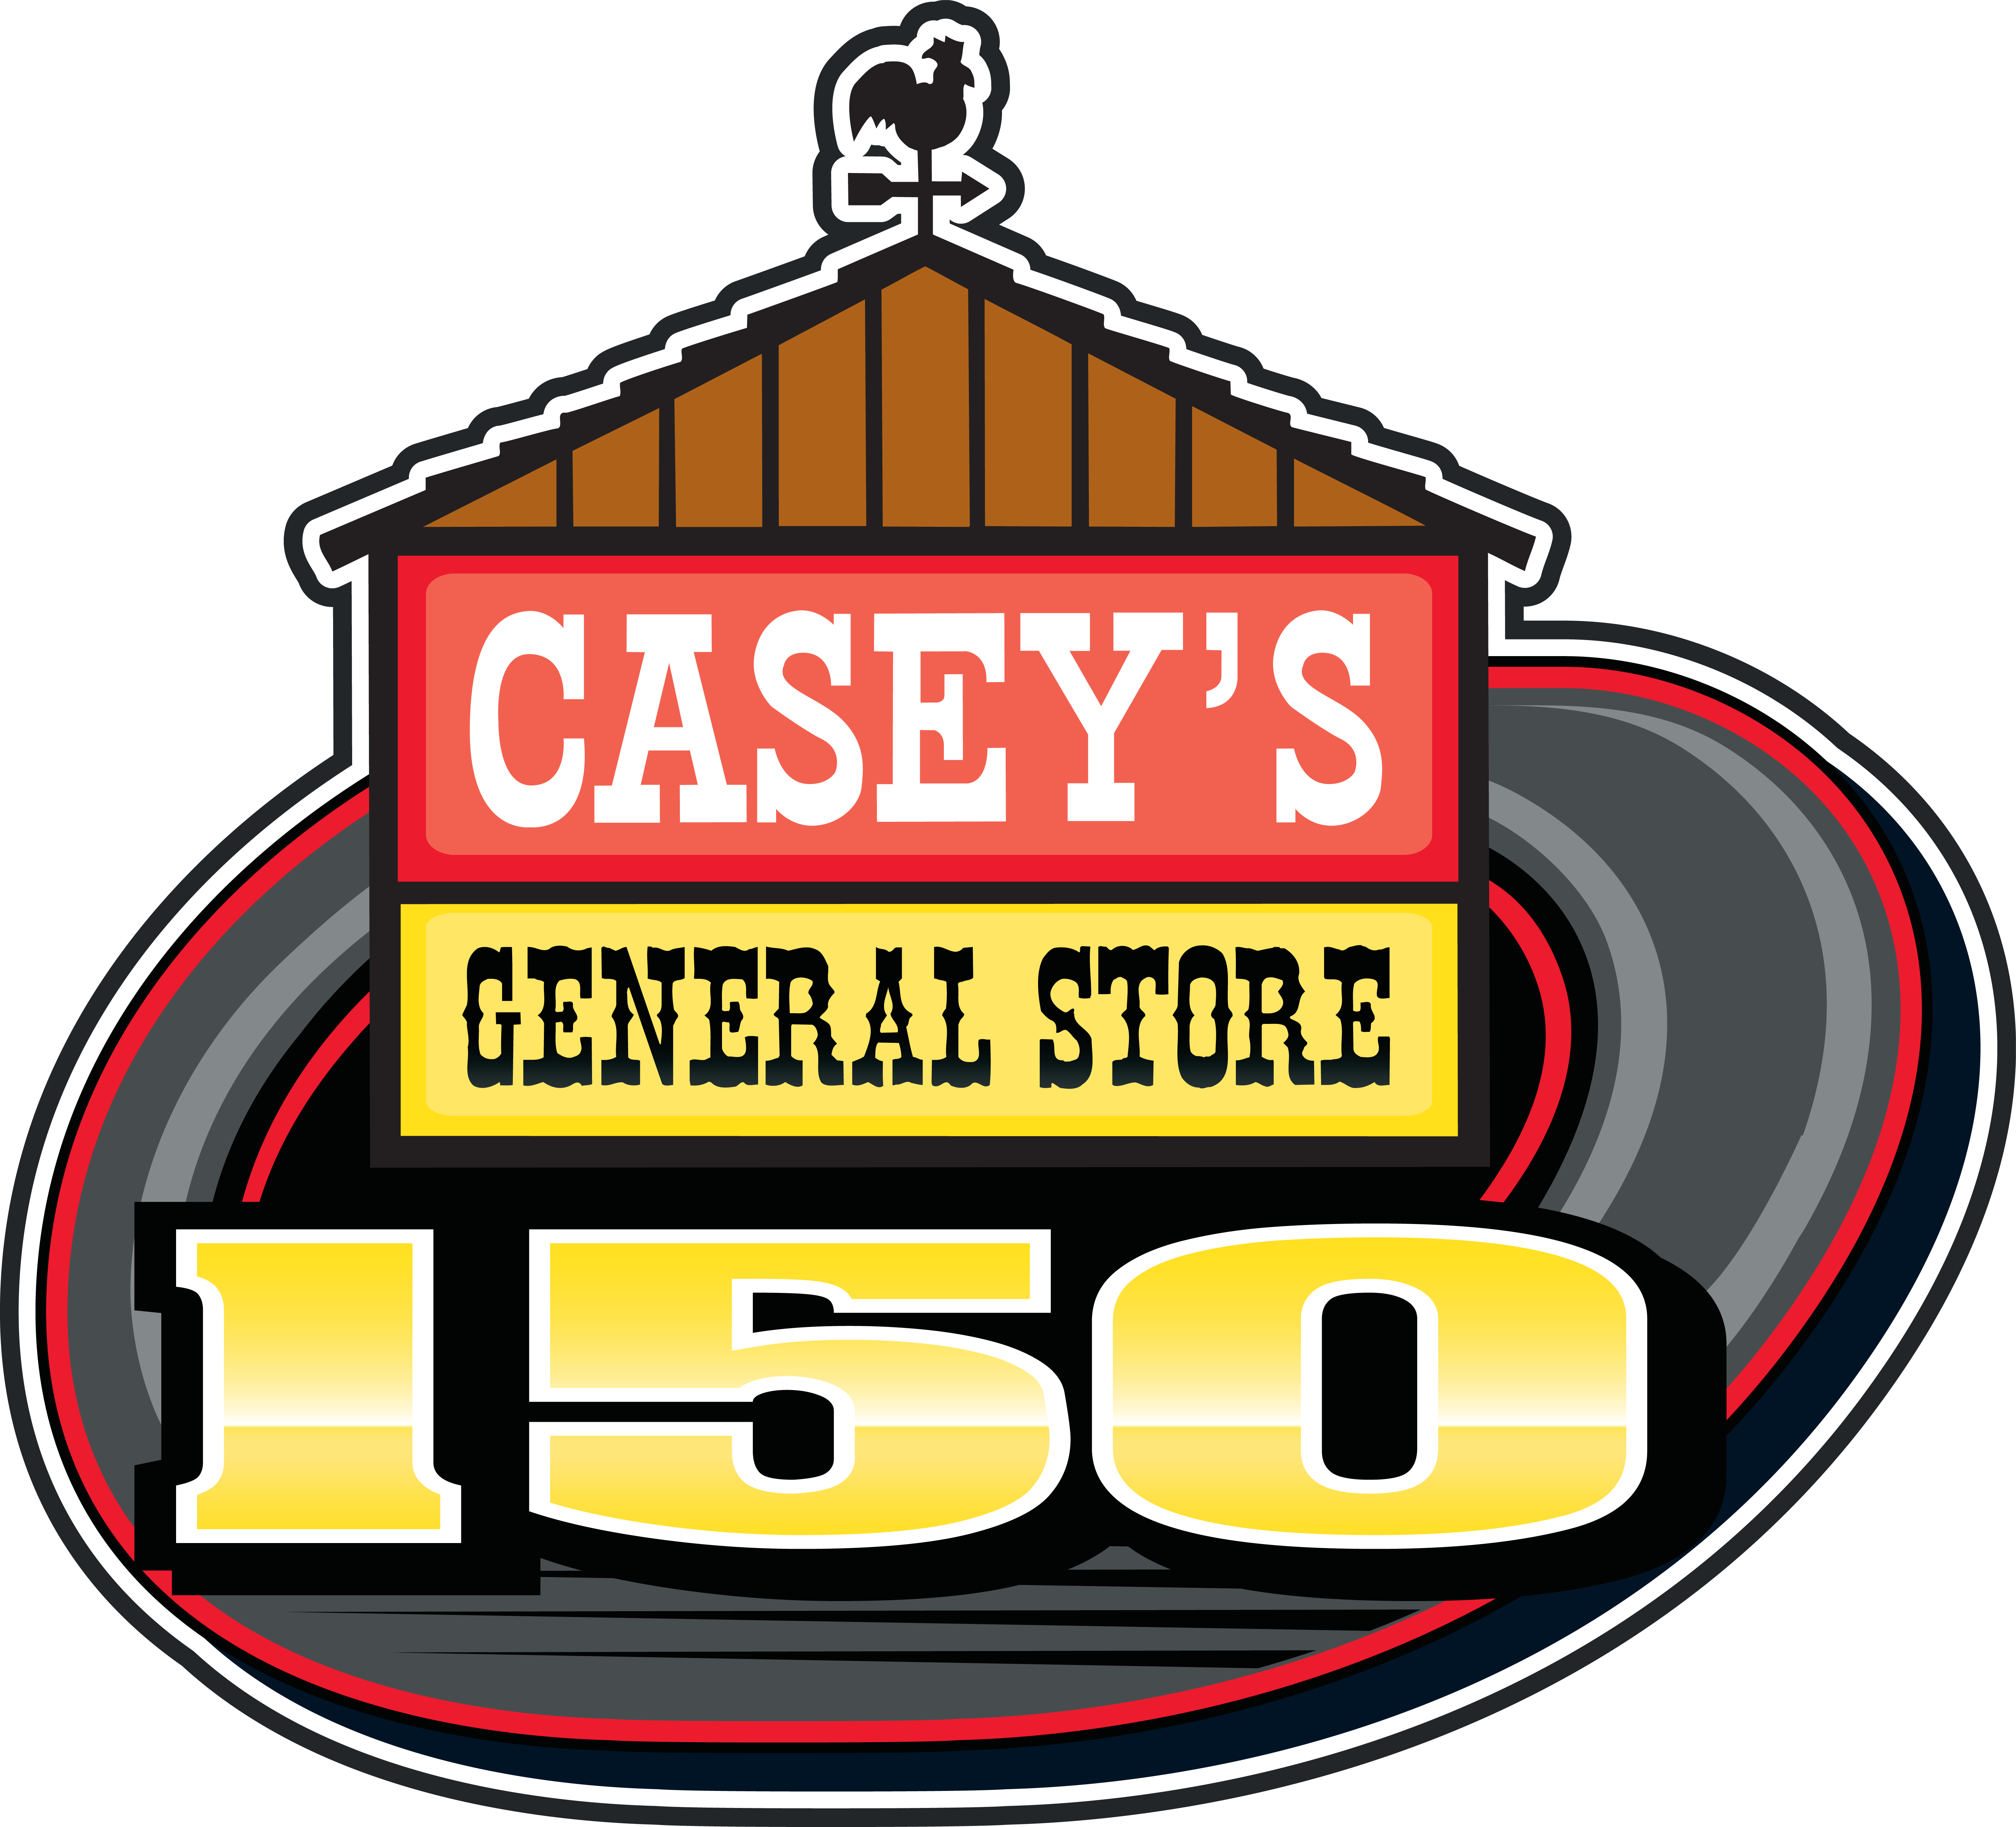 Iowa Speedway - Casey's General Store 150 (6034x5469)